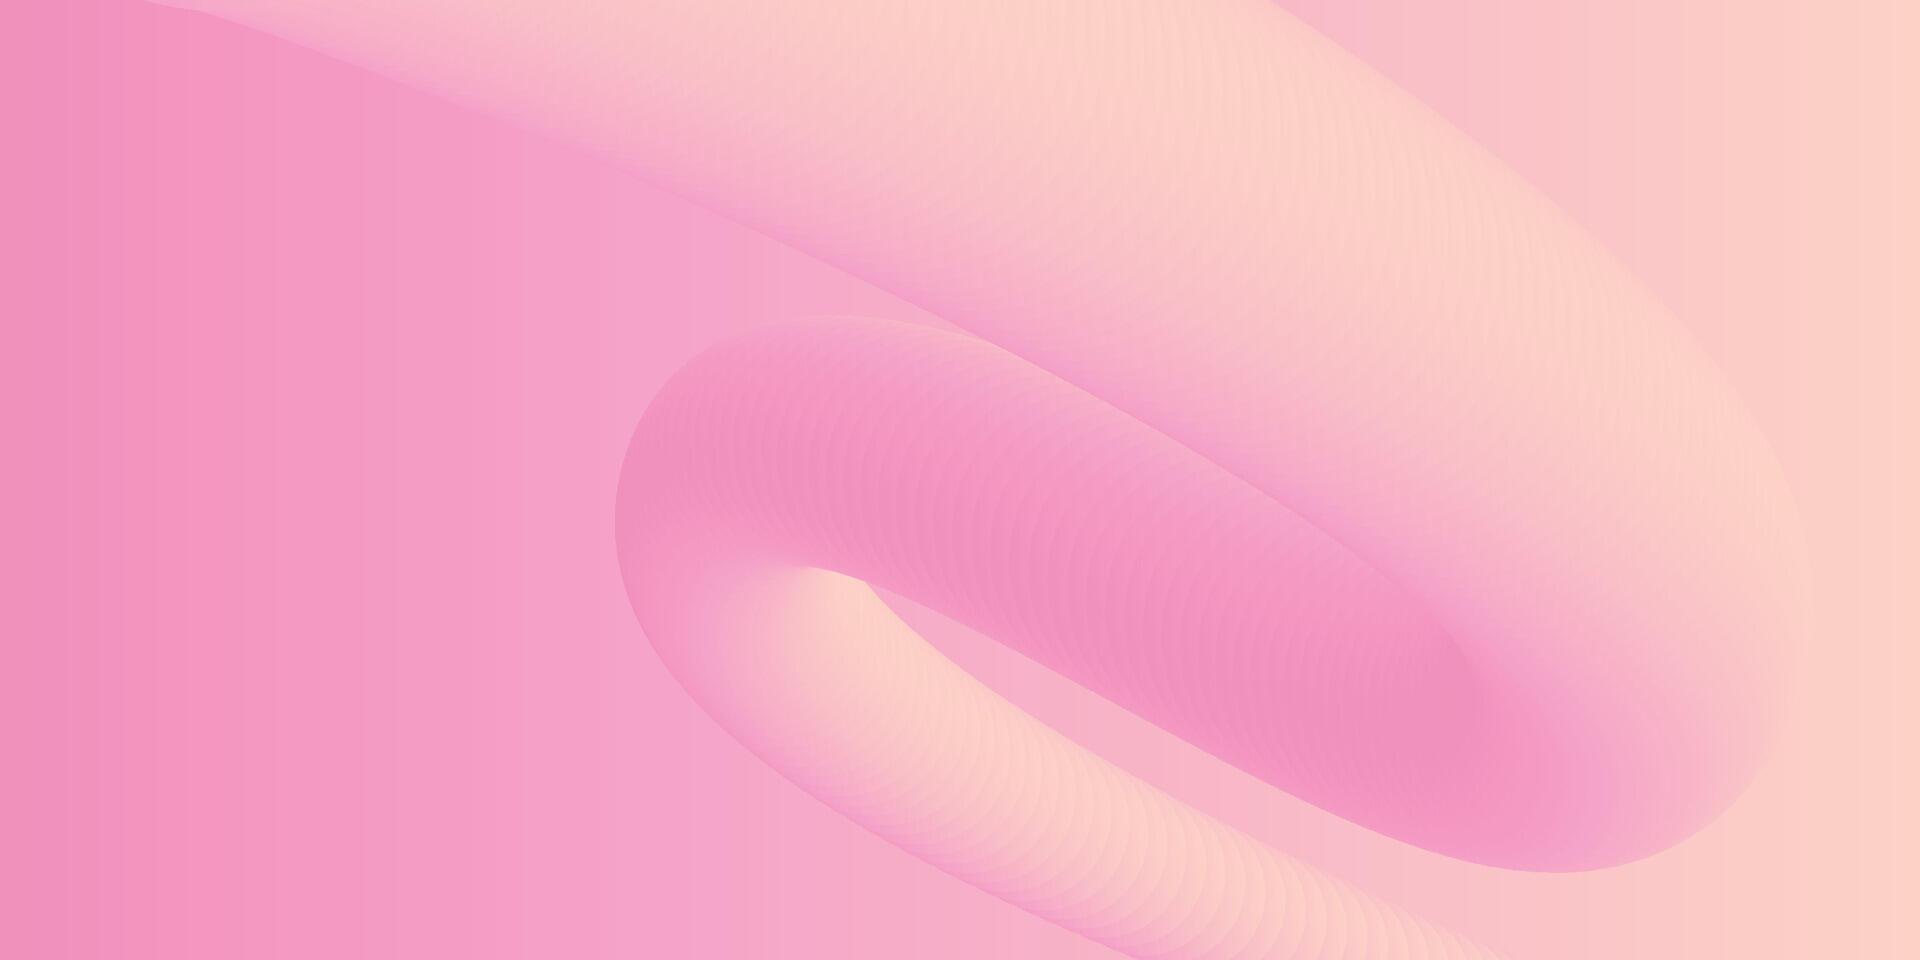 abstrakt 3d Flüssigkeit Flüssigkeit Rosa Farbe Hintergrund. kreativ minimal Kugel Bälle oder Blase modisch bunt Gradient Design zum Startseite Broschüre, Flyer, Poster, Banner Netz. vektor